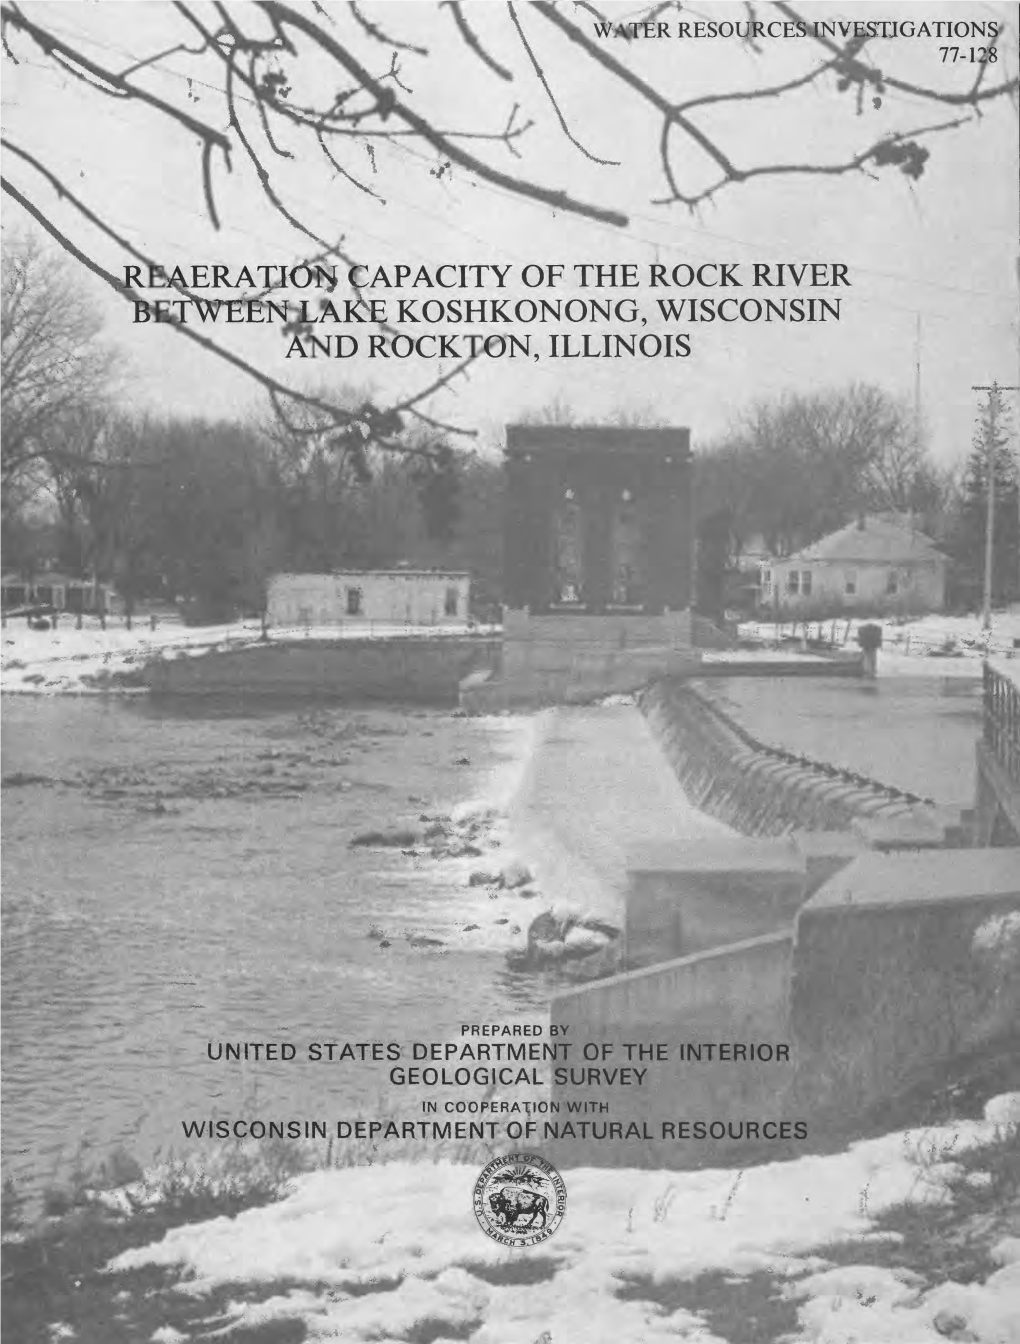 Capacity of the Rock River Lai^E Koshkonong, Wisconsin and Rockton, Illinois